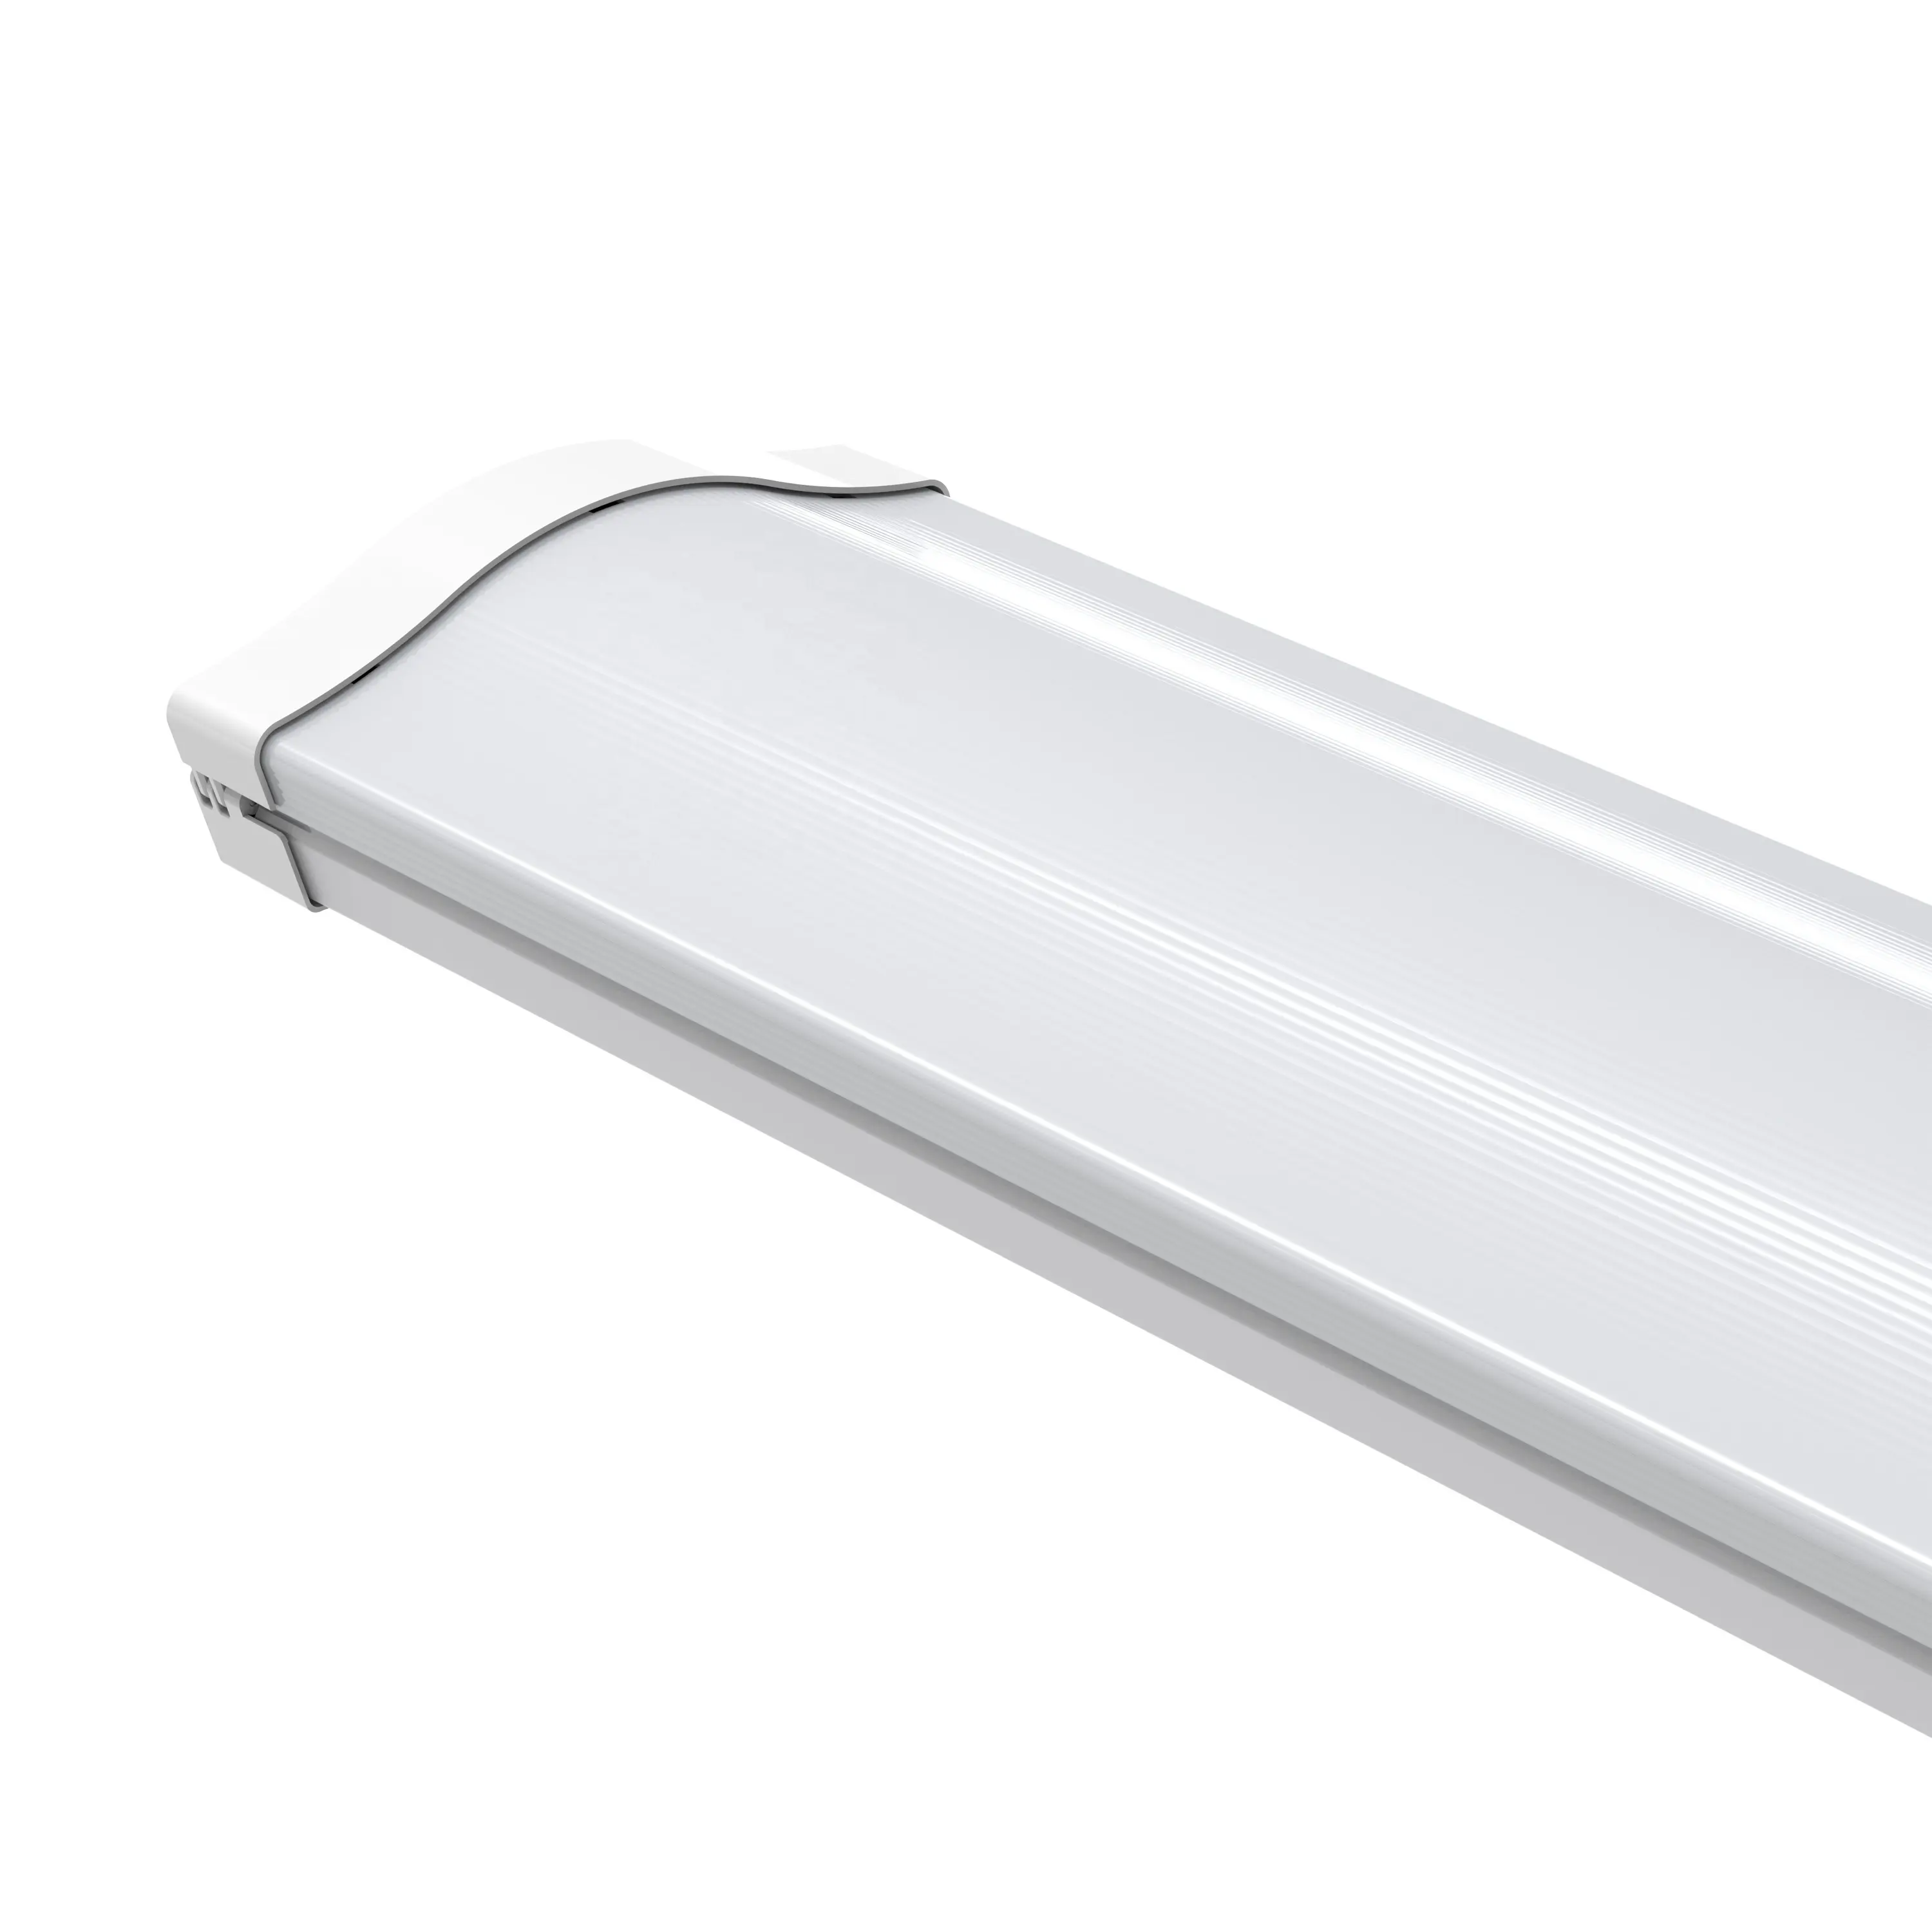 Linear led light 2W 32W 50W Office led track linear light CCT Dimmable Linkable LED Bar Linear Batten Tube lamp